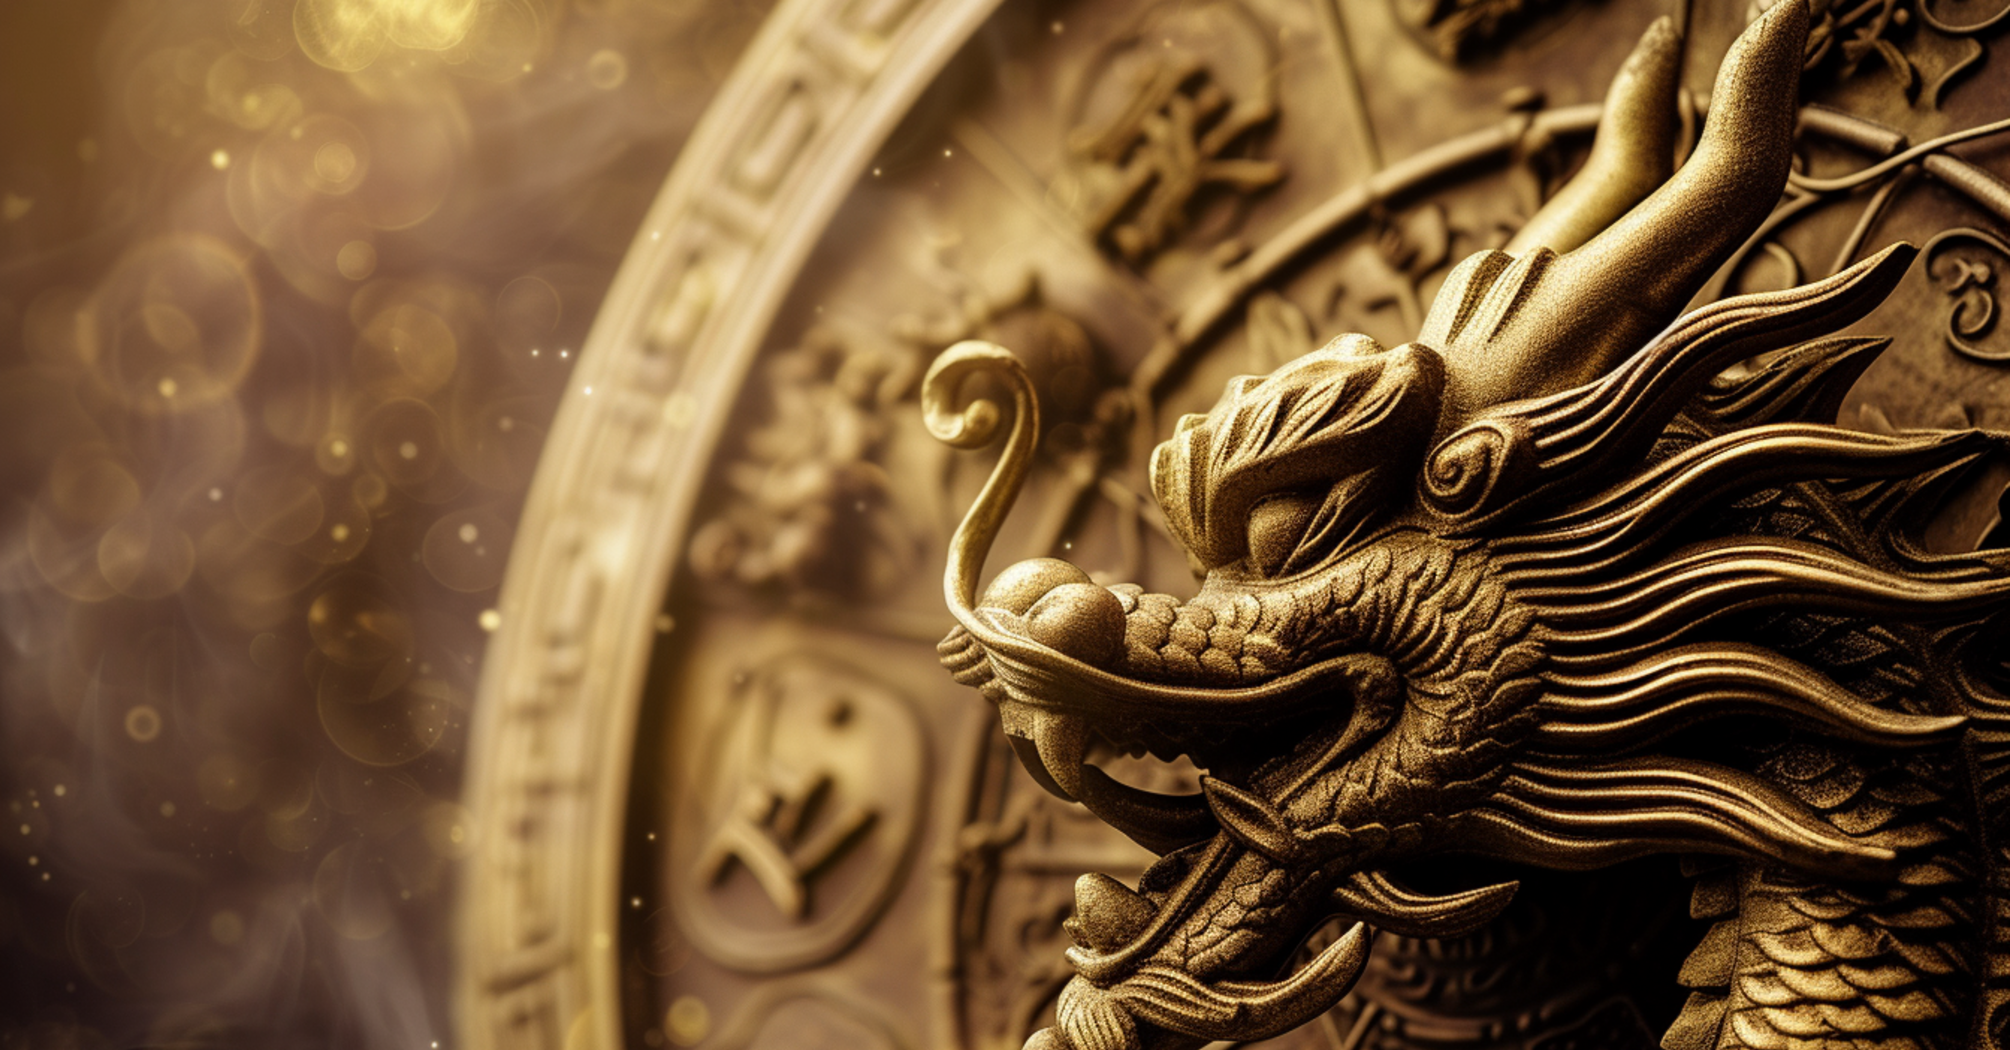 Ожидаются благоприятные финансовые возможности: Китайский гороскоп на 13 февраля